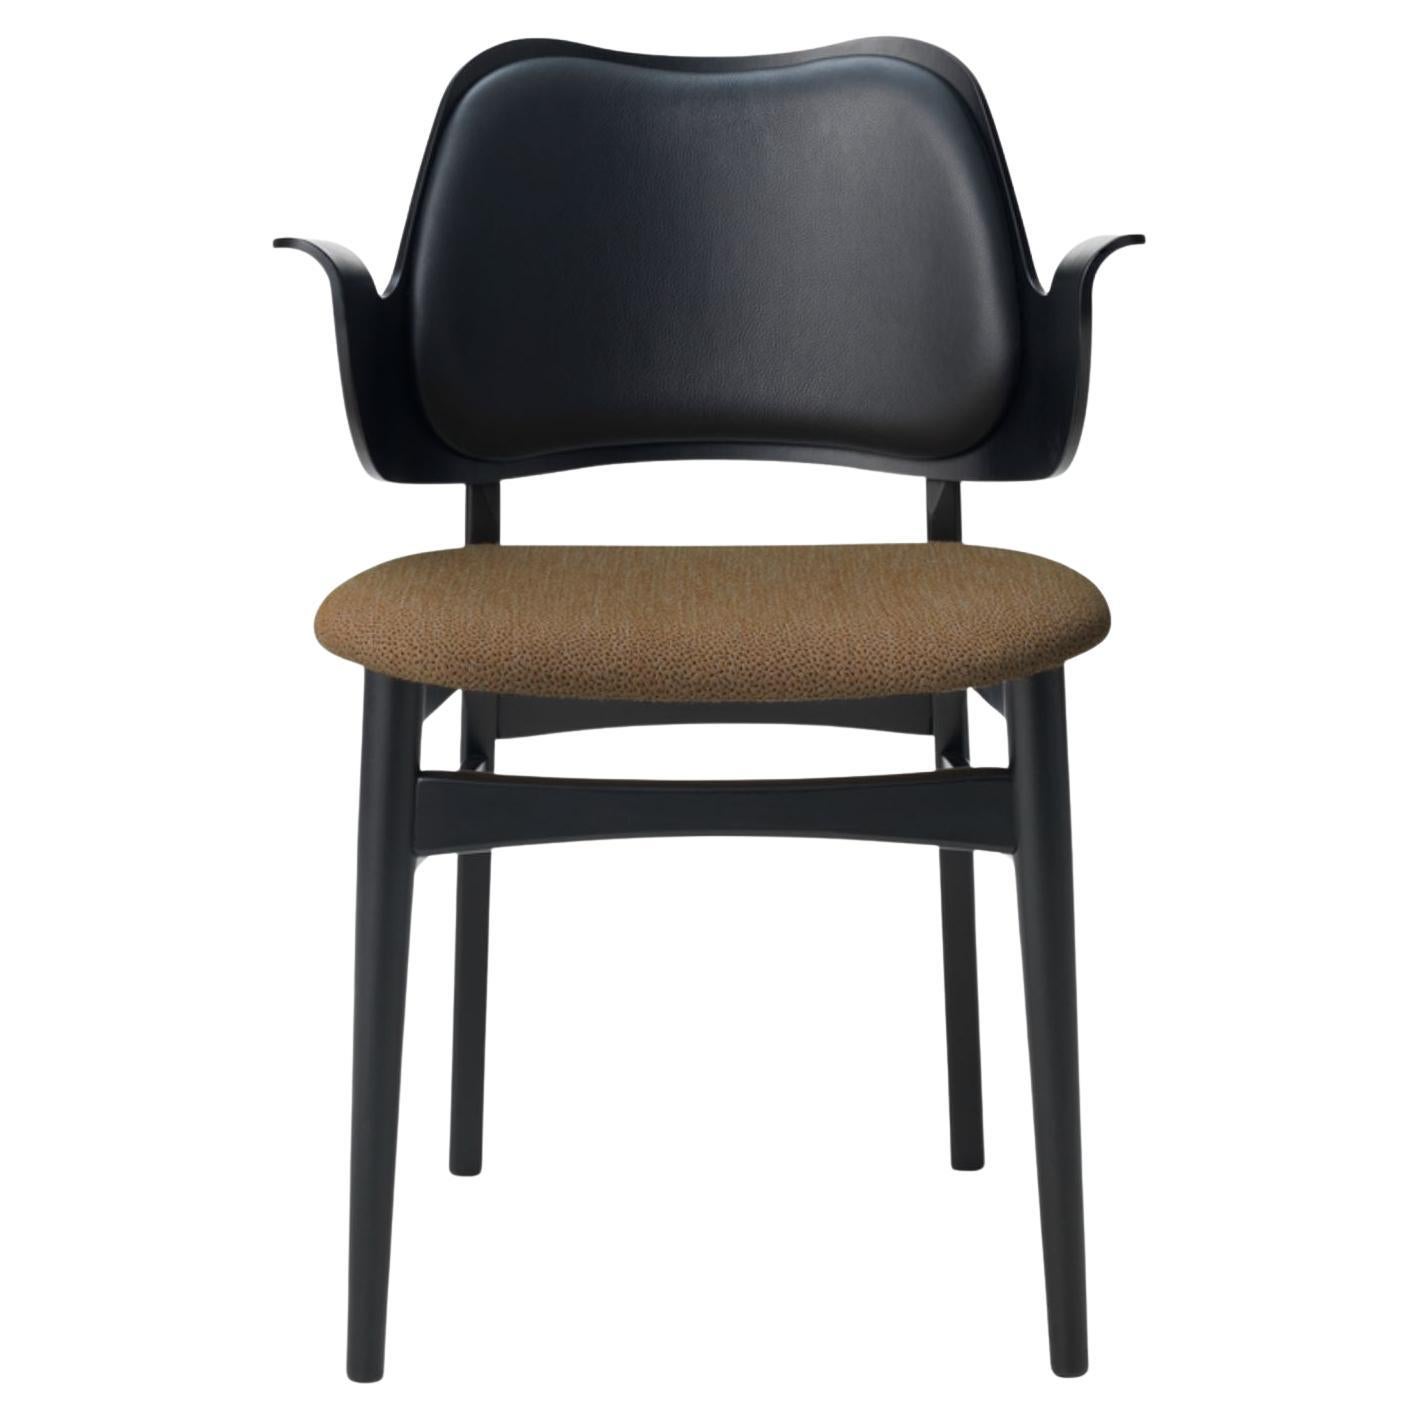 Gesture-Stuhl aus Teakholz, geöltes Eichenholz, schwarzes Leder, Cappuccino-Braun von Warm Nordic